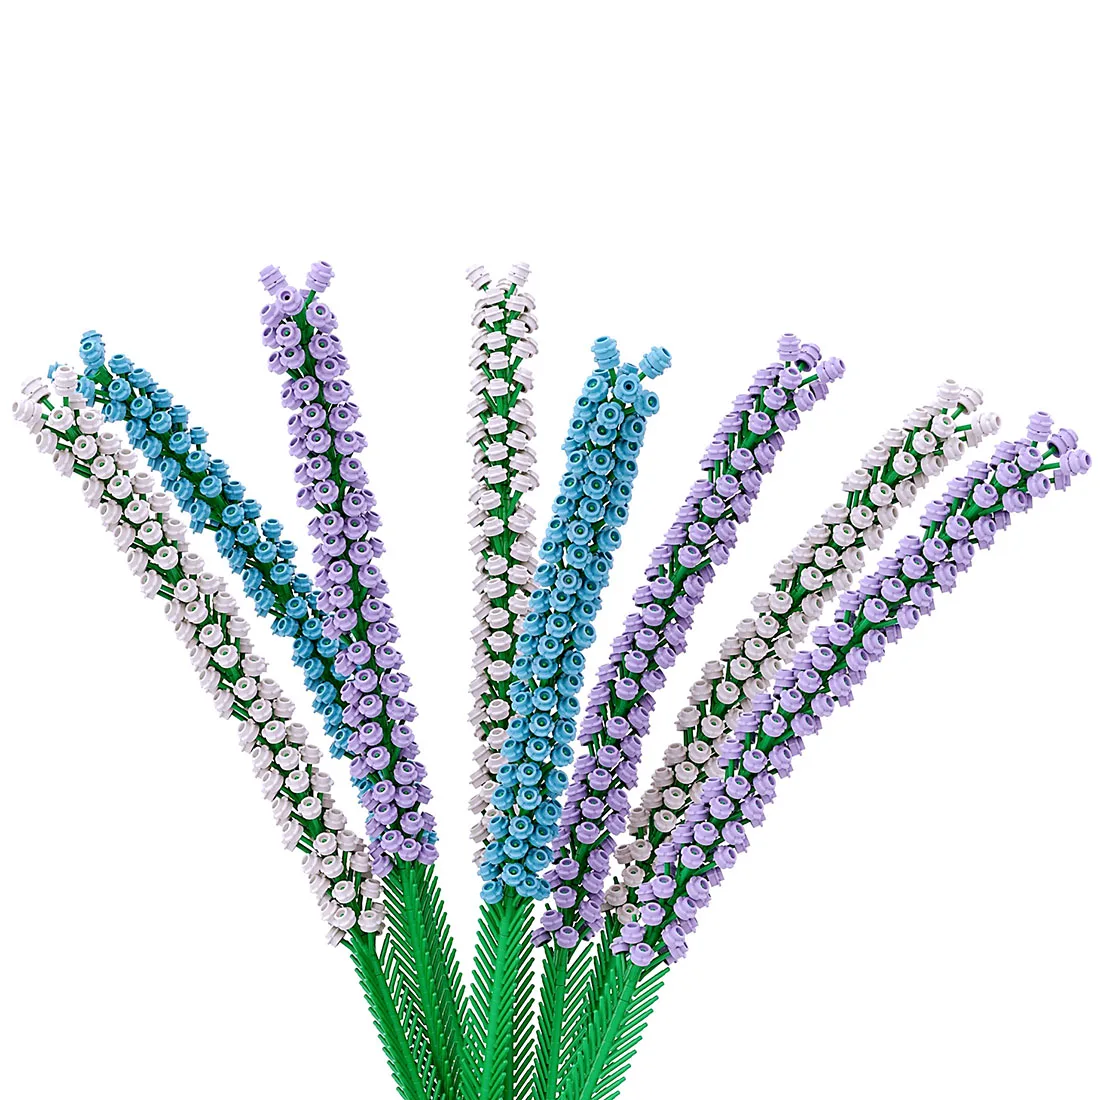 

1540Pcs 8 Bouquets Lavender Bricks DIY Small Particle Building Block Model MOC Toy - White + Blue + Purple (No Vase Blocks Kit)